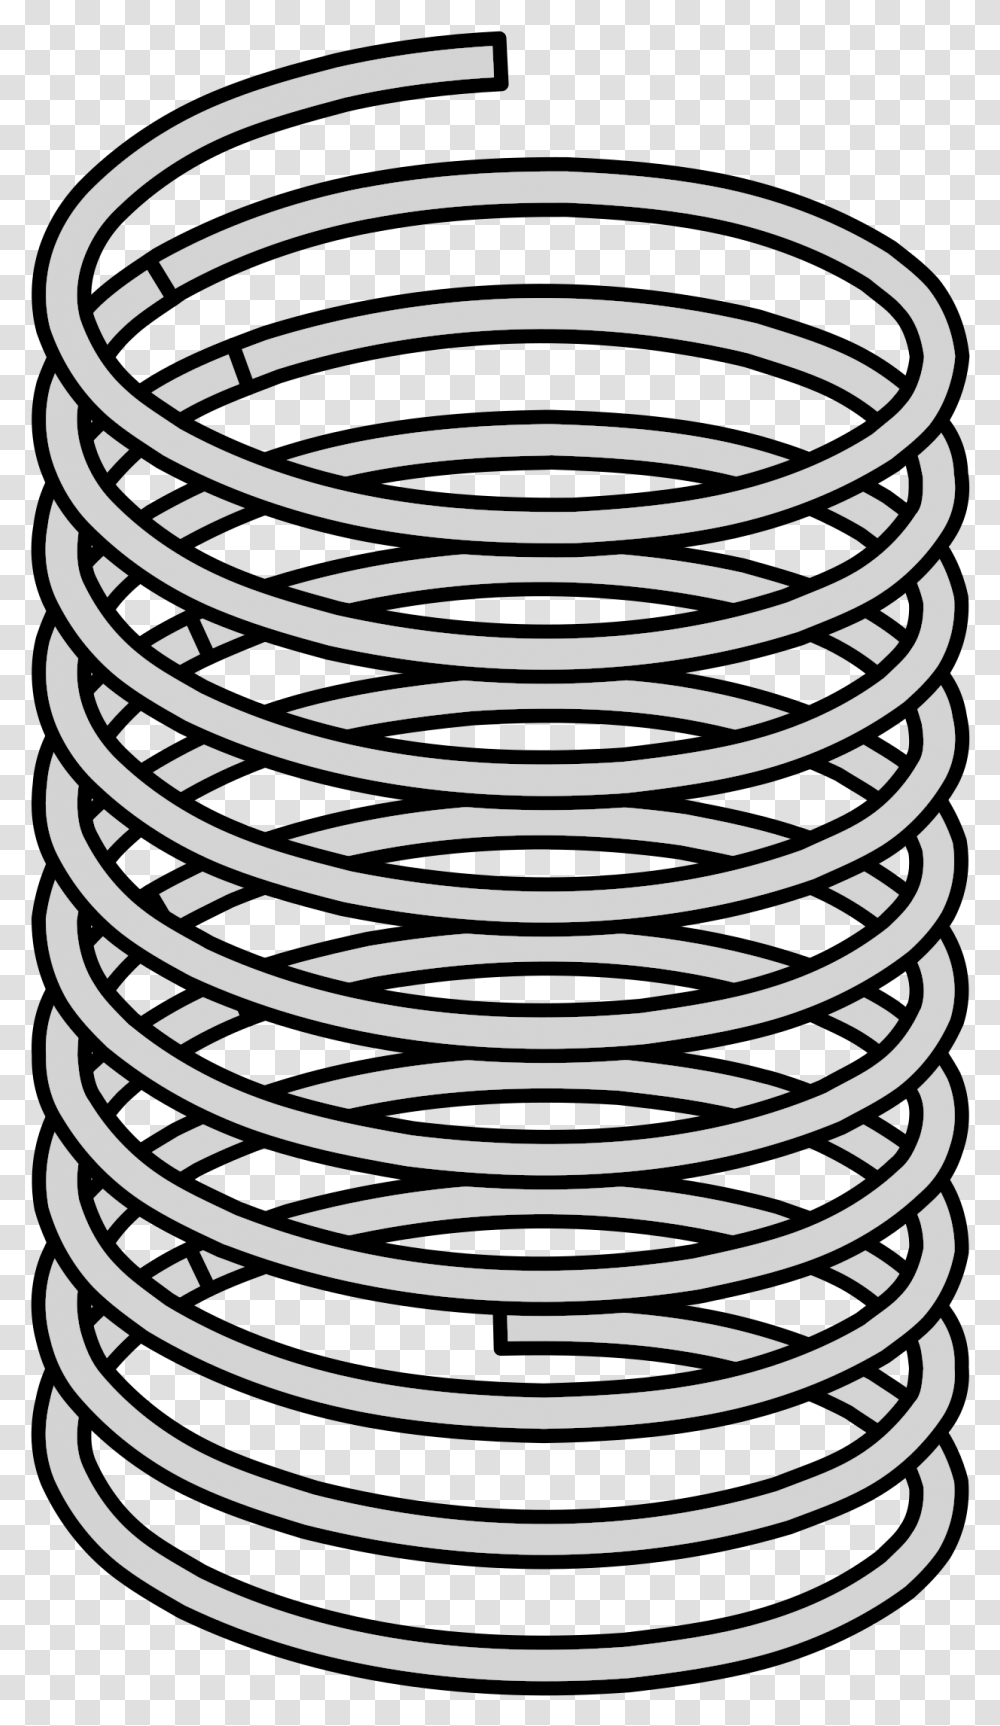 Coil Spring Inkscape Spring Framework Electromagnetic Spring Coil Clipart, Spiral, Rug Transparent Png